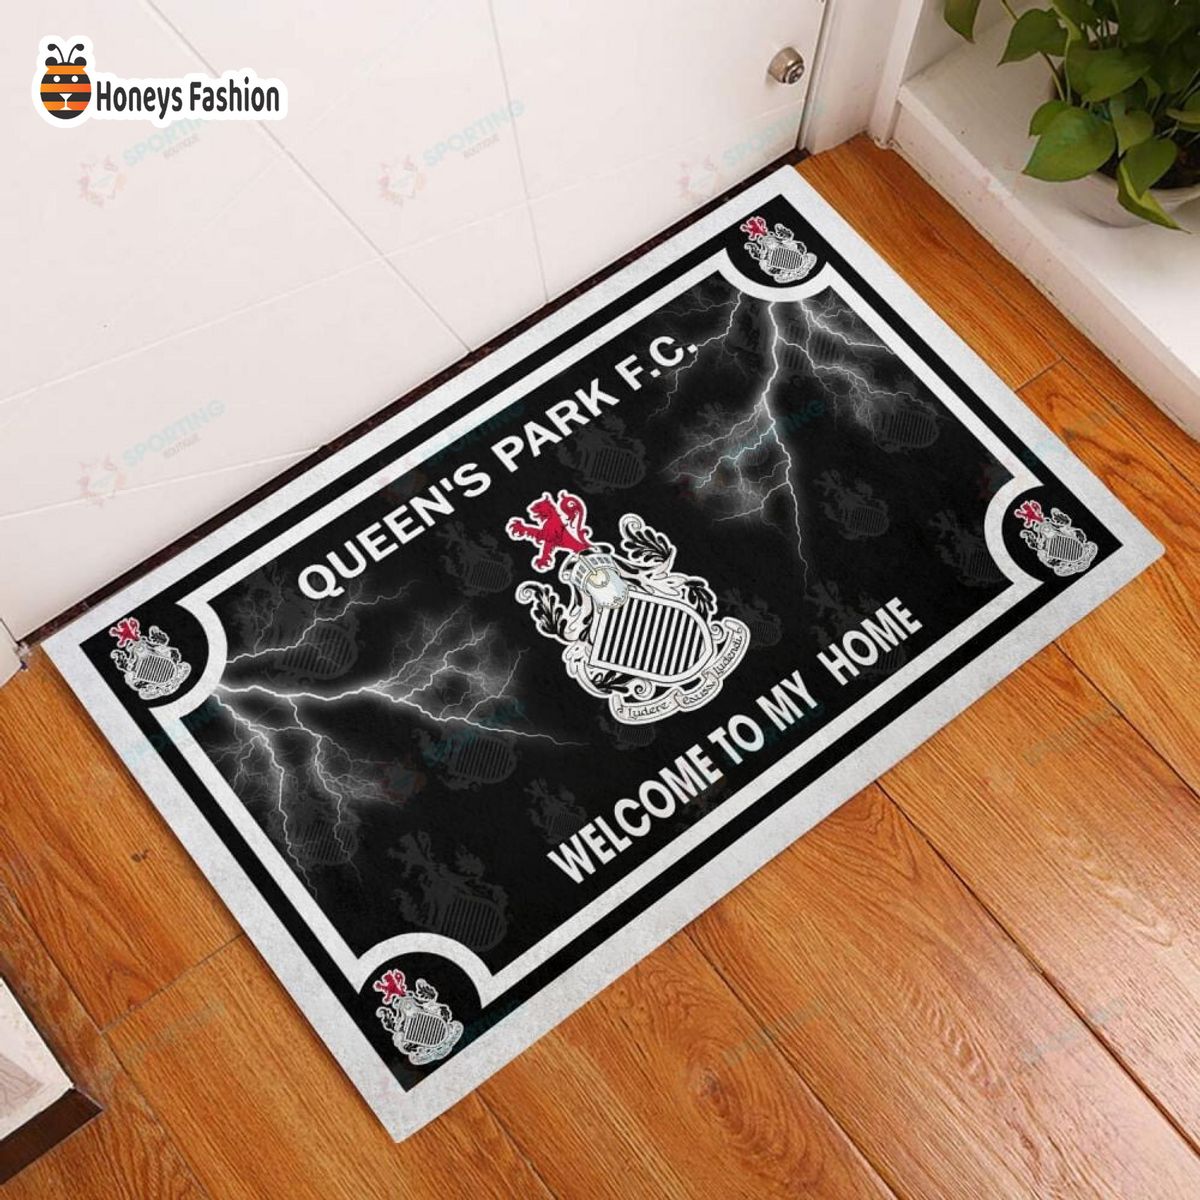 Queen’s Park F.C. welcome to my home doormat